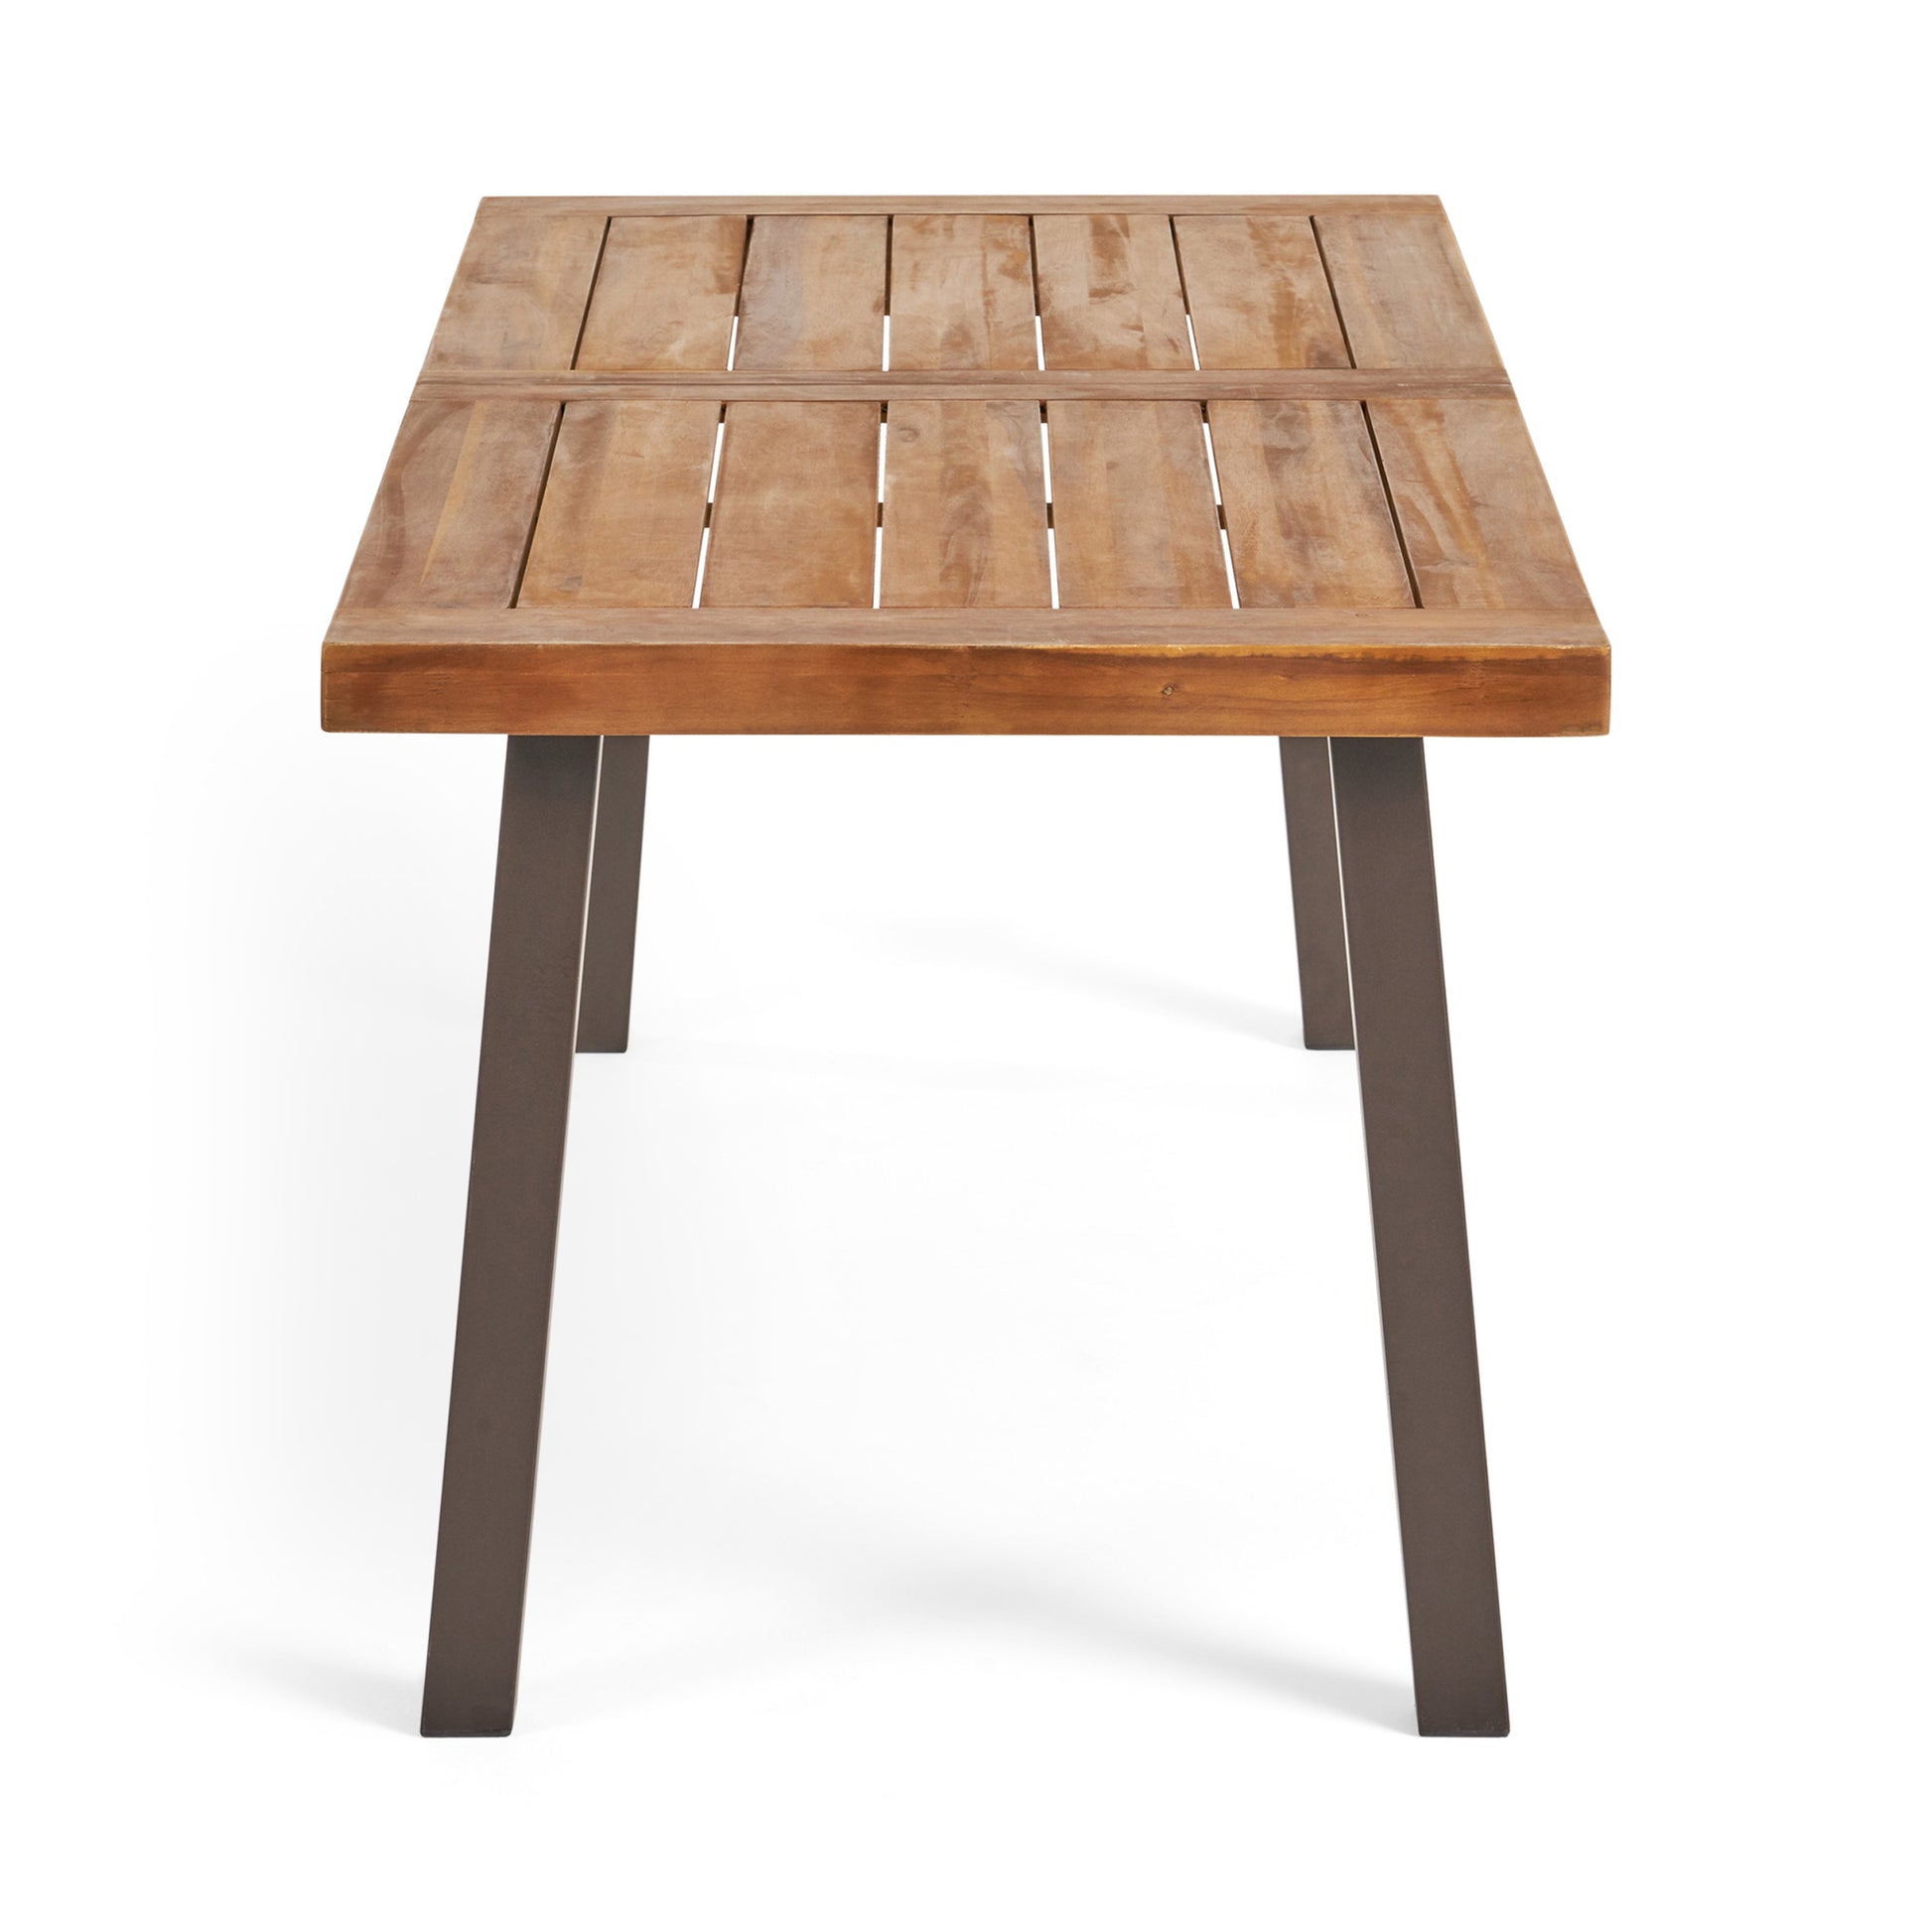 Della Dining Table - Teak Wood Metal